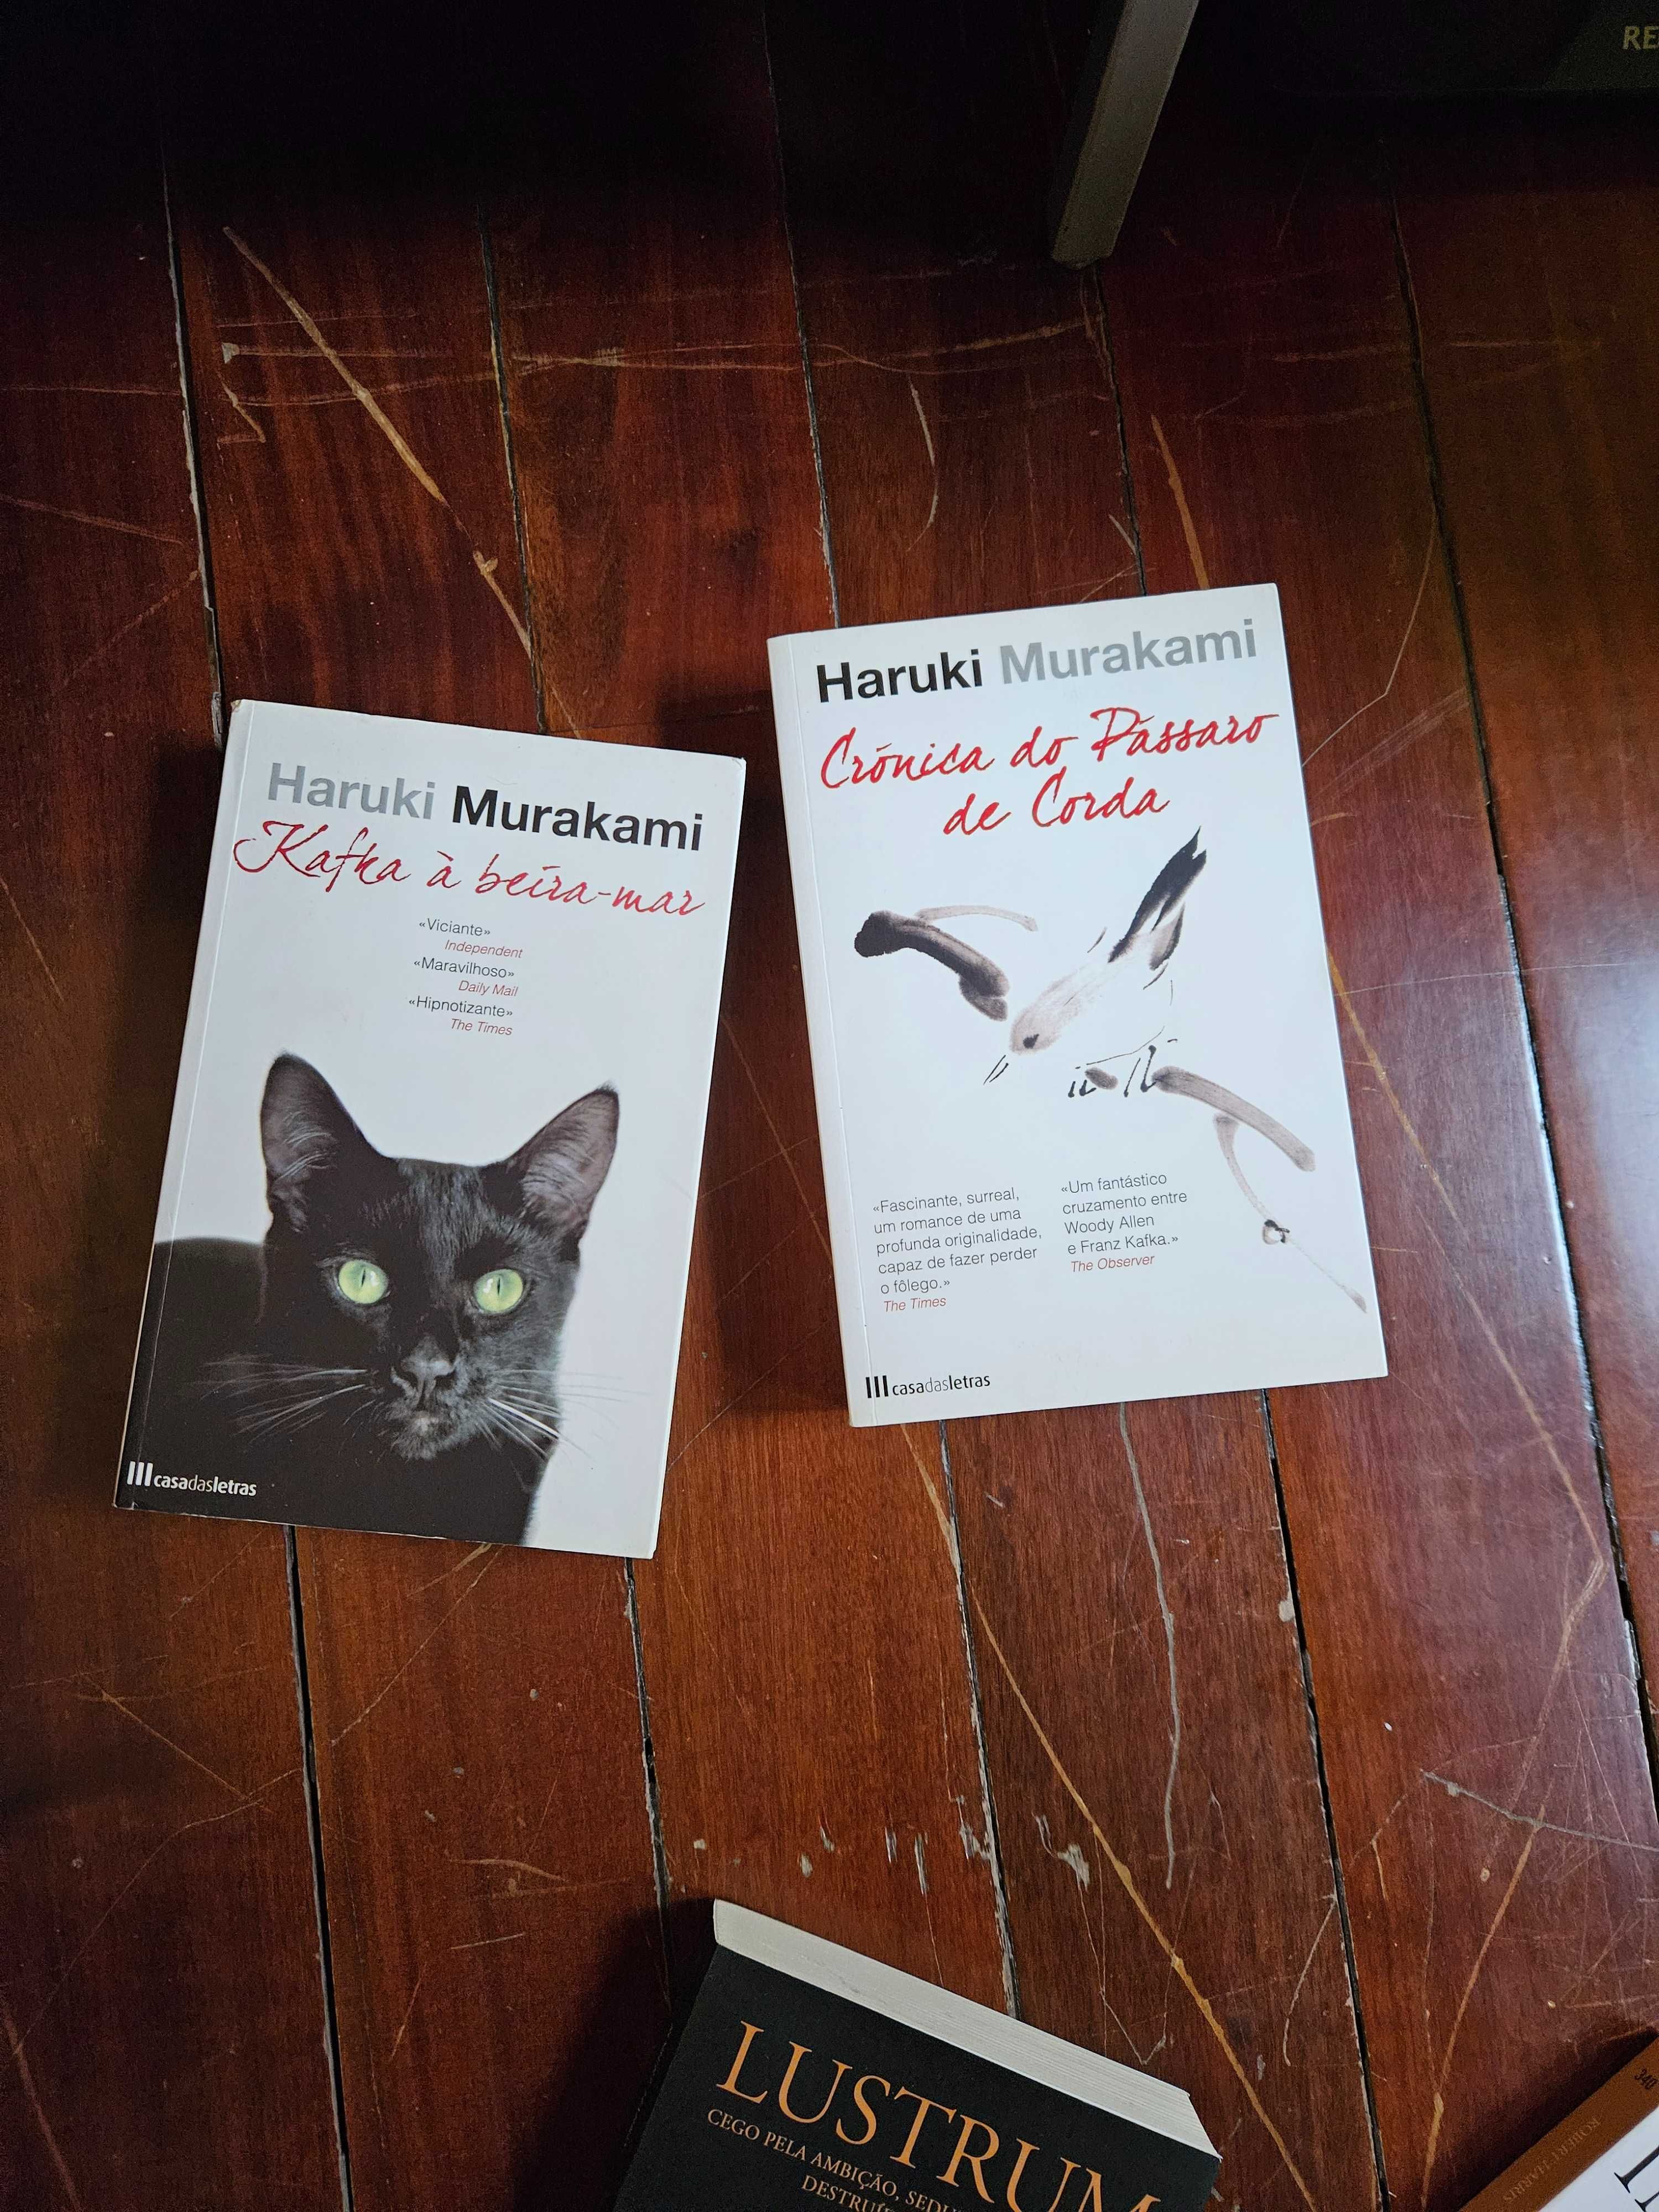 Livros de H. Murakami Kafka à Beira Mar e Crónica do Pássaro de Corda